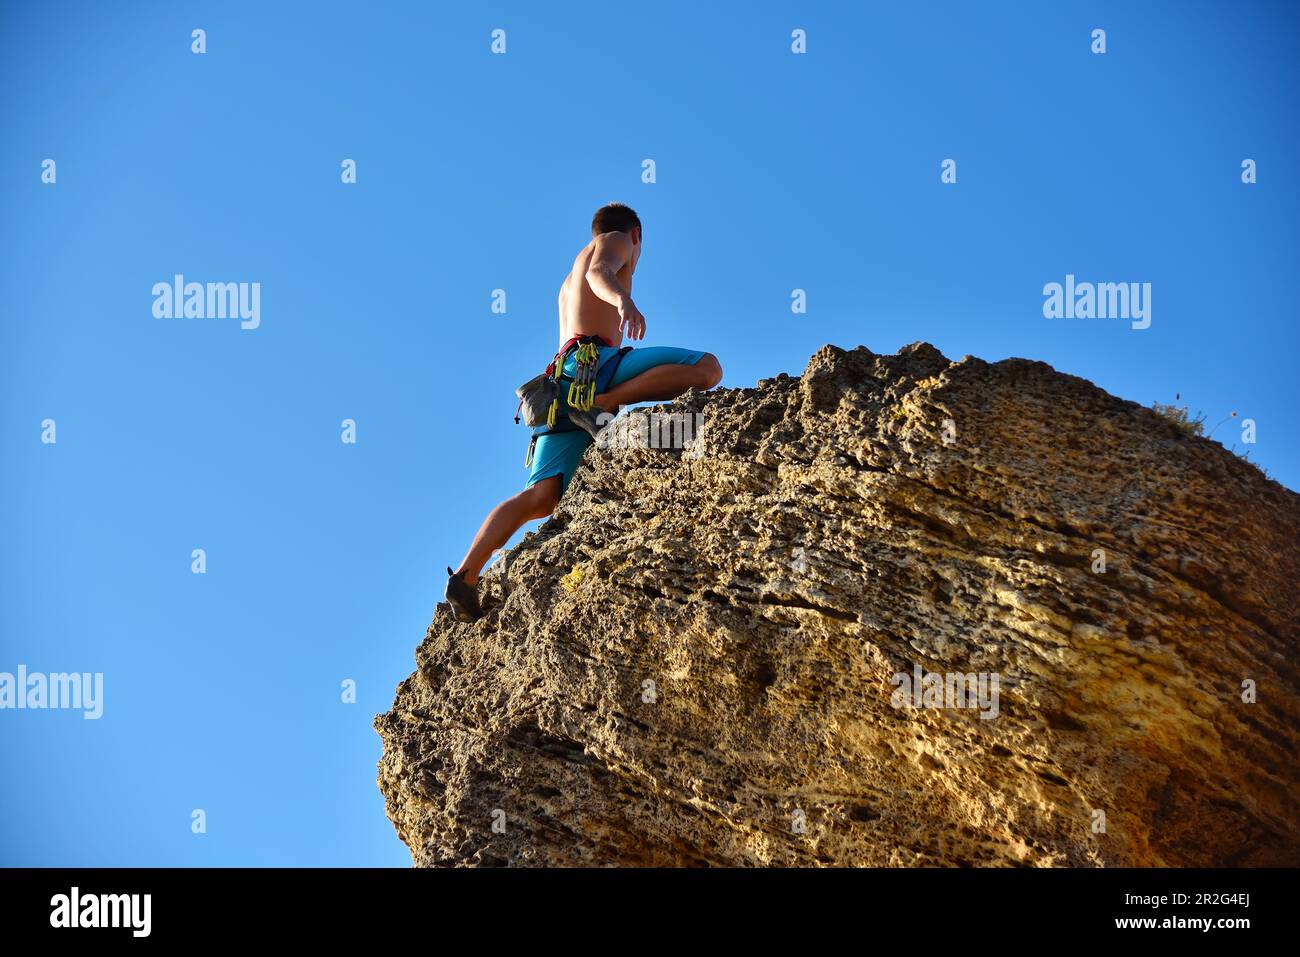 Extremkletterer mit Ausrüstung klettert auf einen Felsen Stockfoto